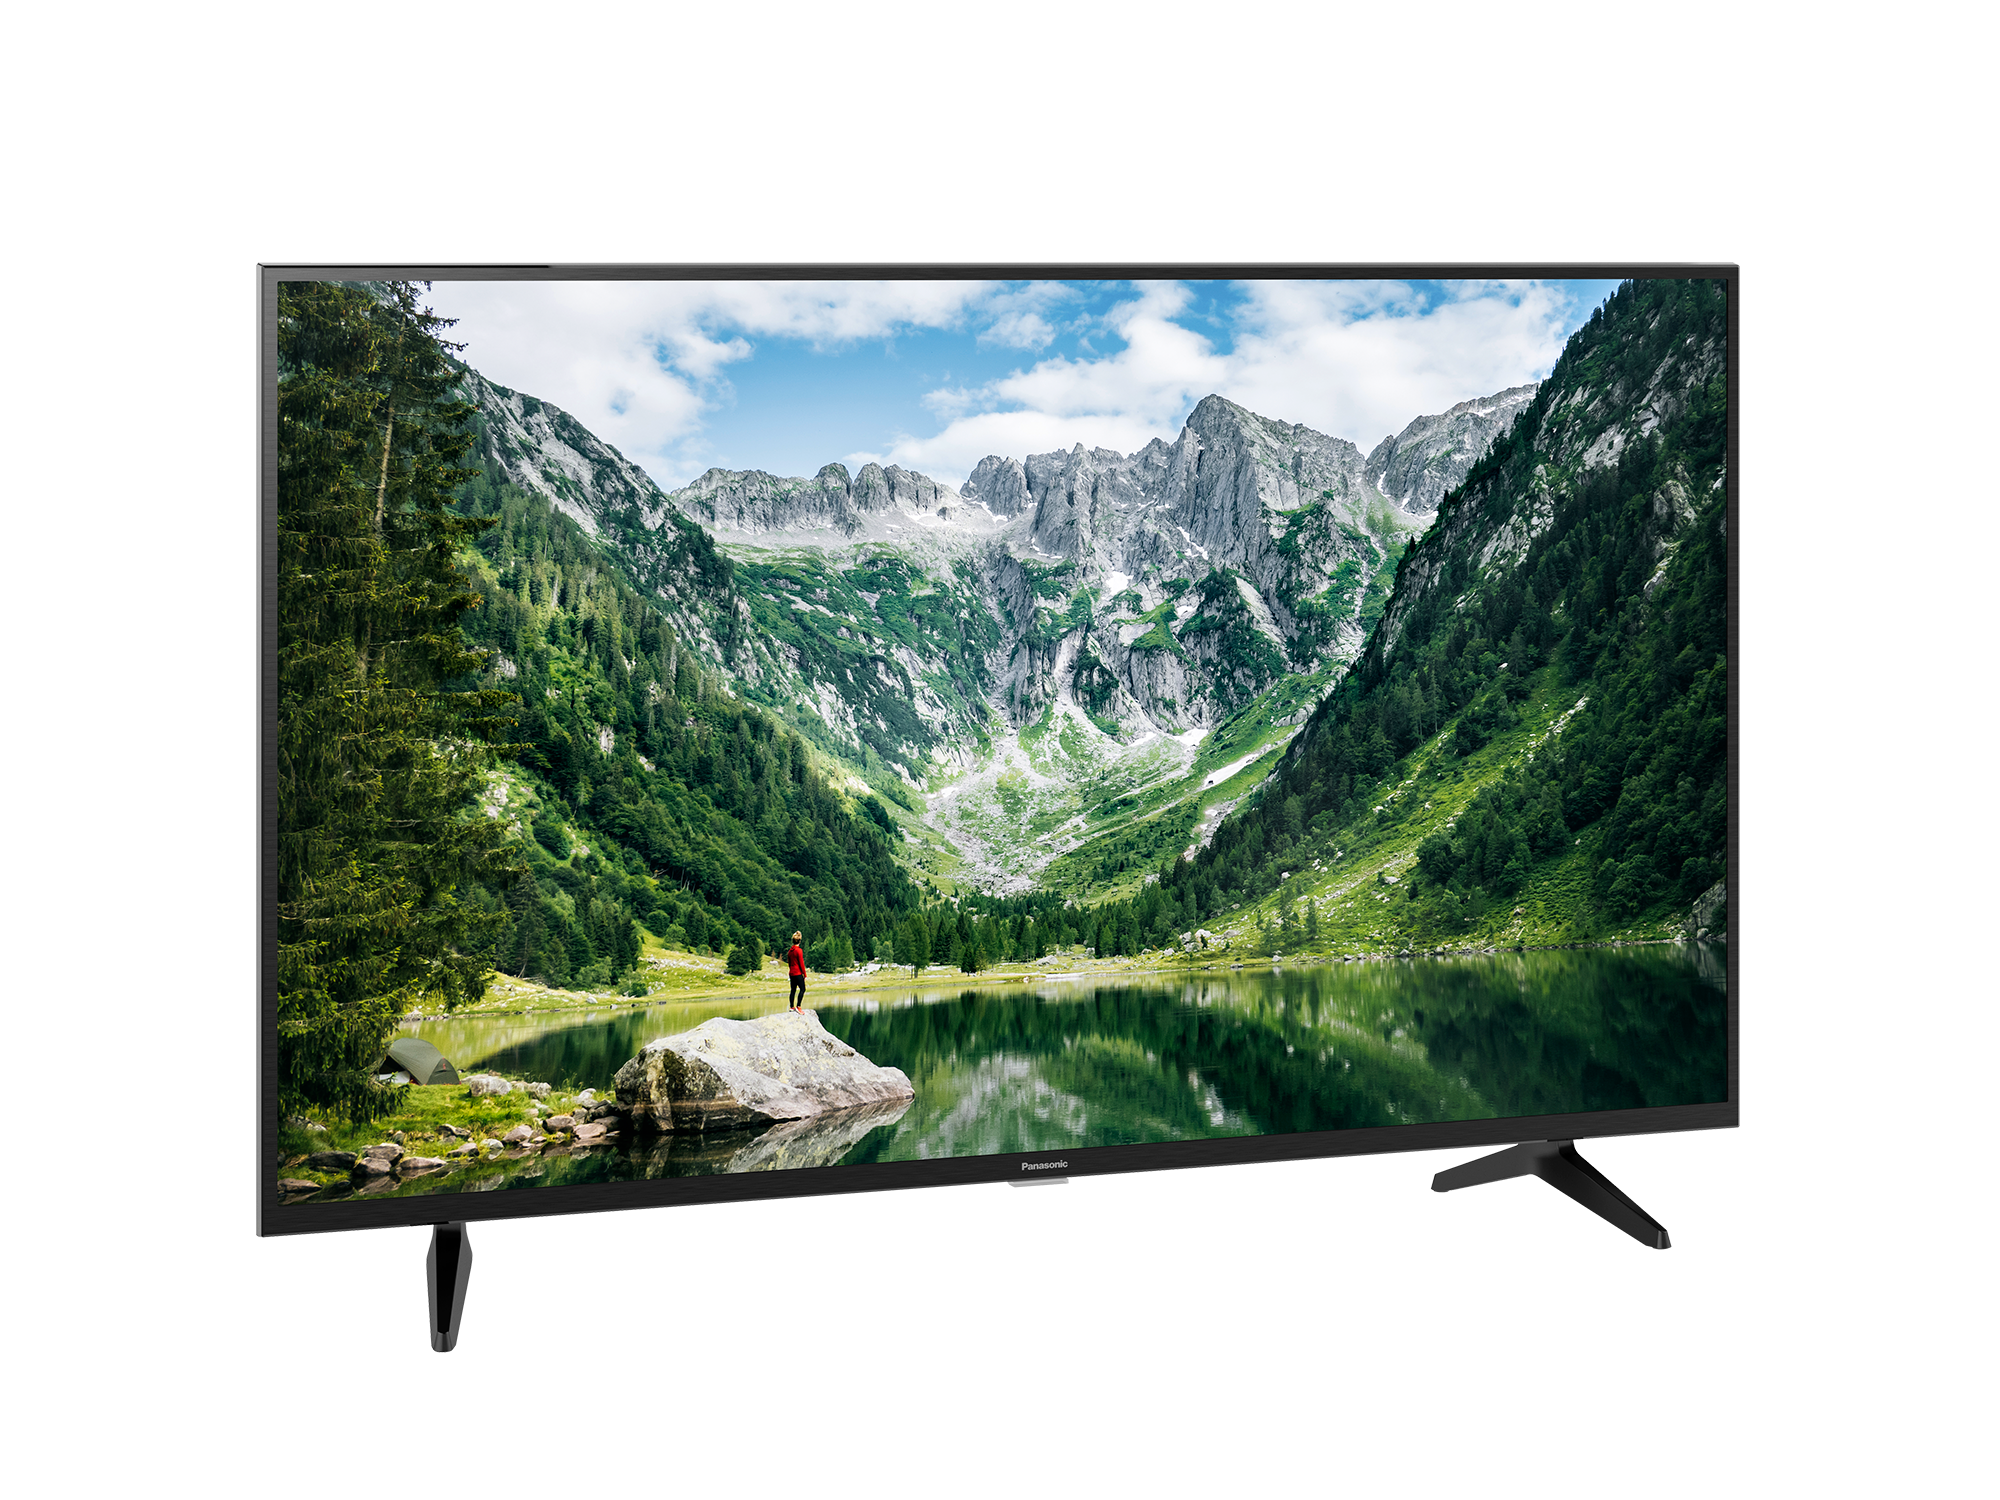 Smart TV Panasonic Full HD 43 inches TH-43LS600V - Điều khiển giọng nói - Bảo Hành Chính Hãng 24 Tháng